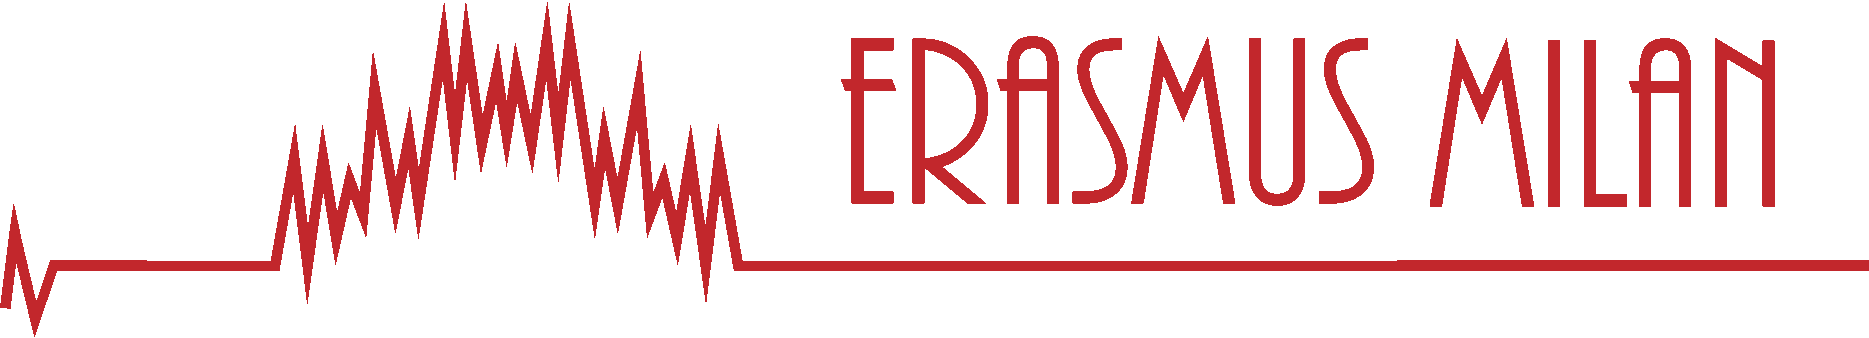 Erasmus Milan Logo Header